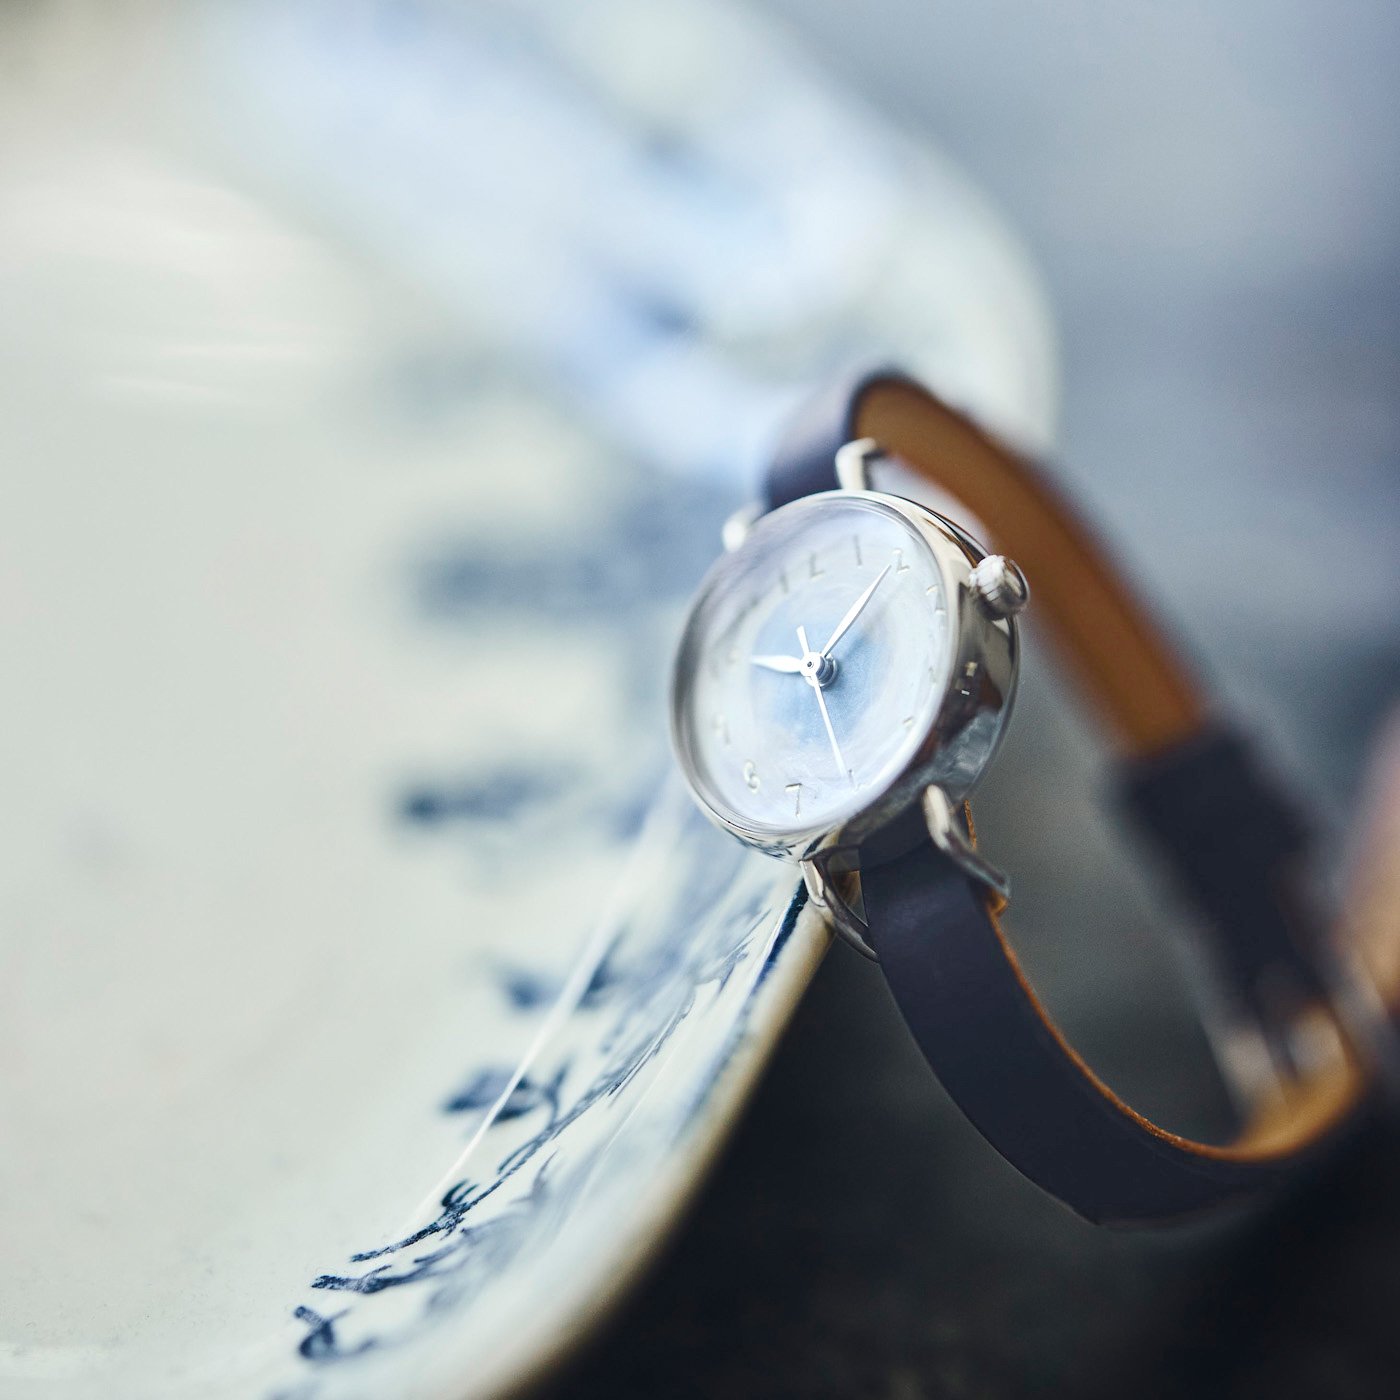 金沢の時計職人が手掛けた 冬空に見惚れる腕時計〈深藍色〉